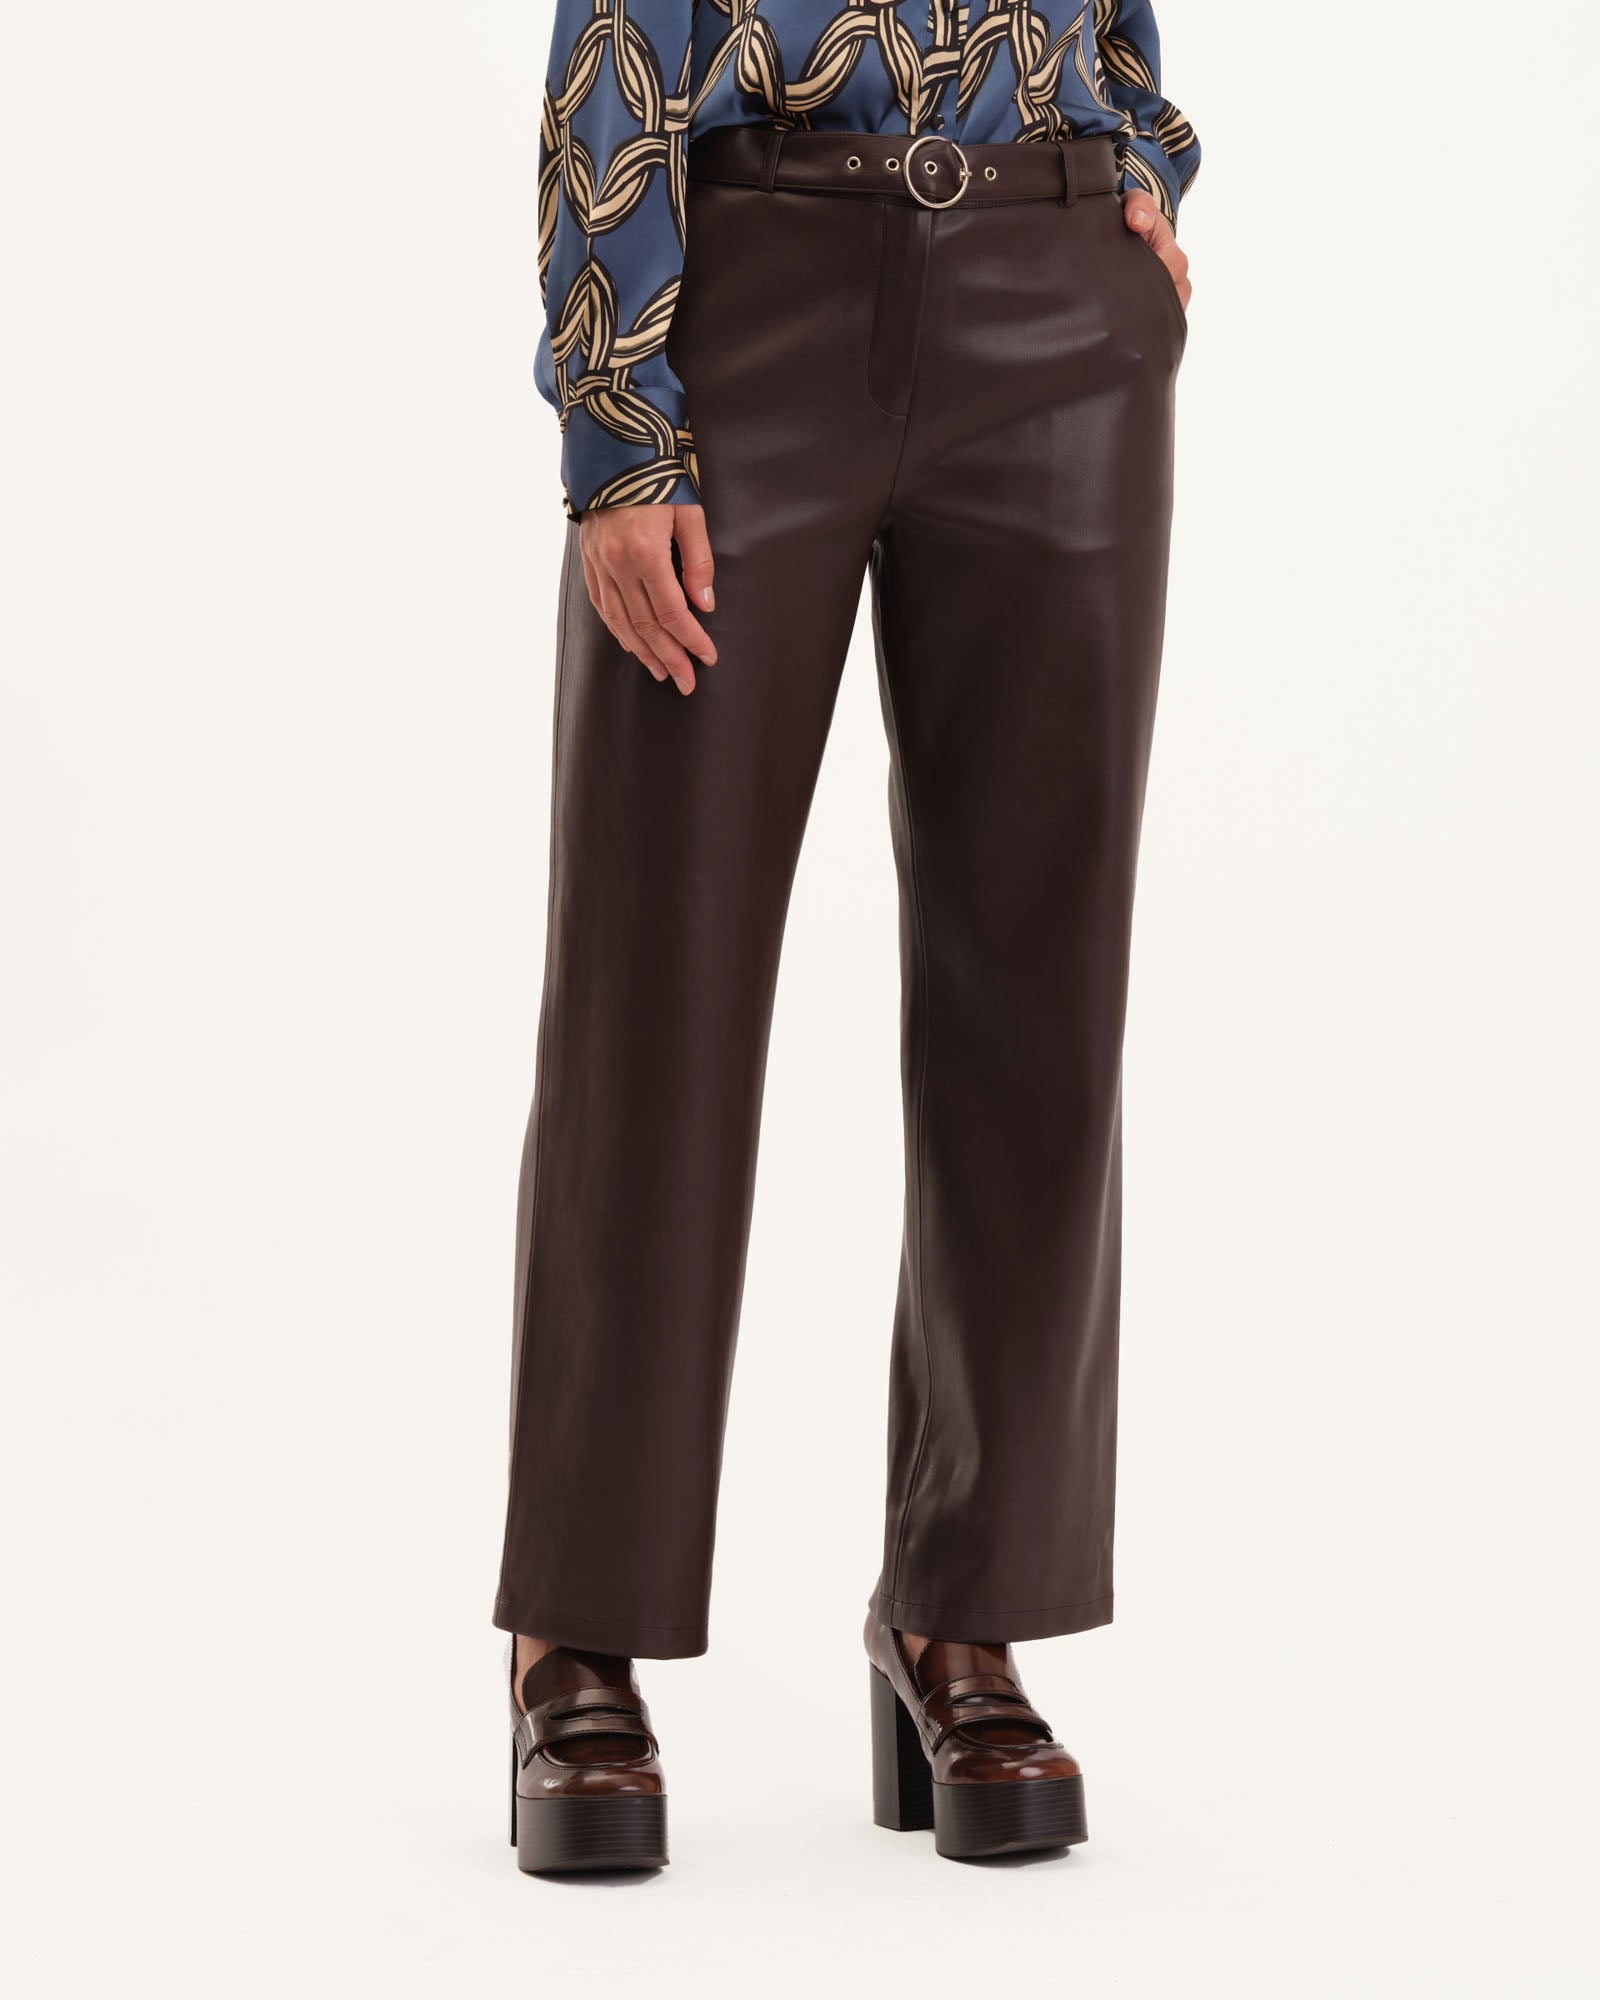 Vegan Leather Slim Pant with Self Belt, Rich Wood | T Tahari